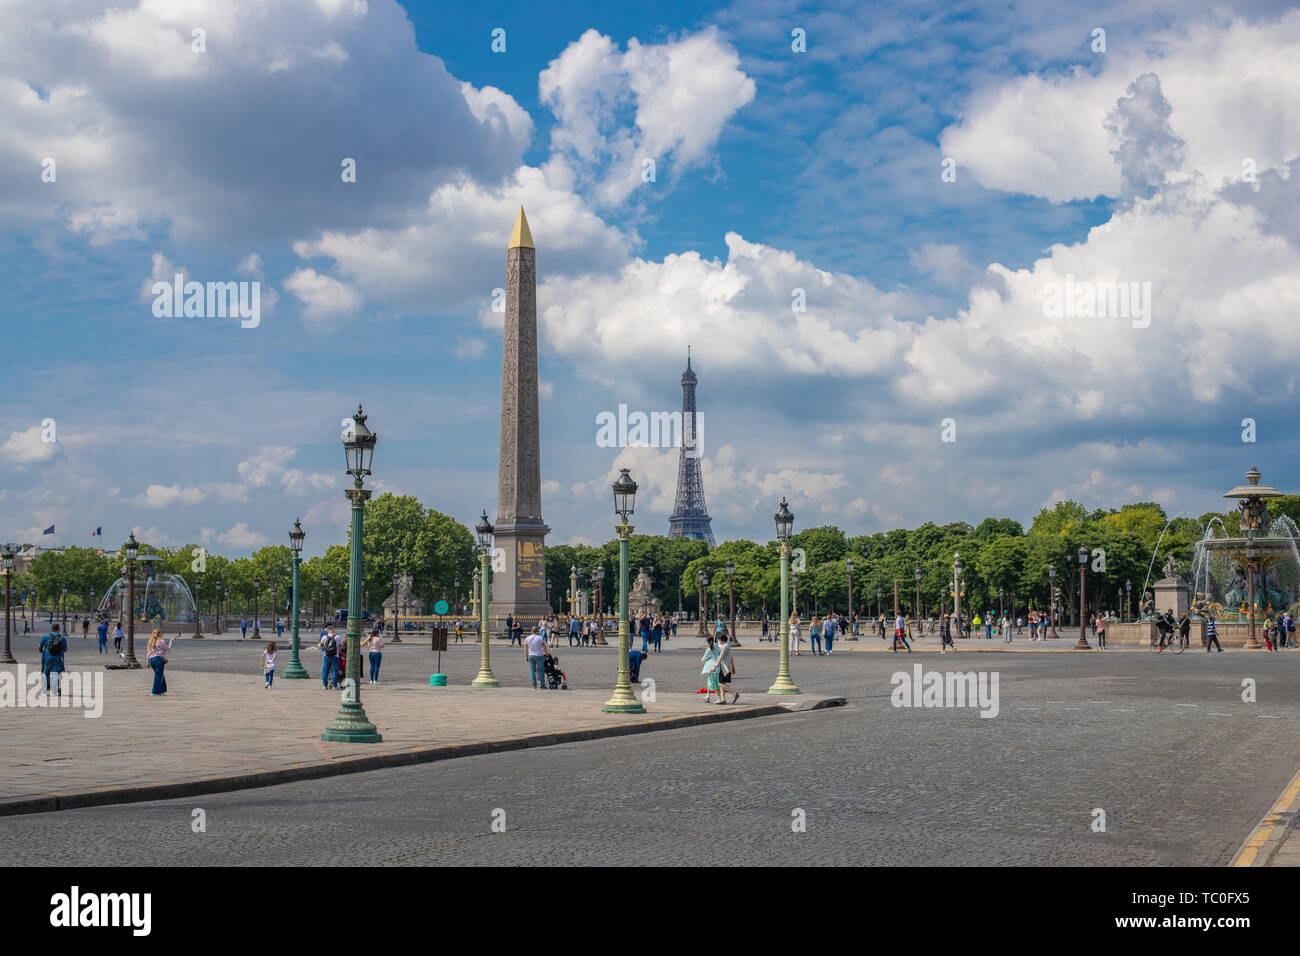 Parigi, Francia - 25 Maggio 2019: Luxor Obelisco Egiziano al centro di Place de la Concorde contro lo sfondo della torre Eiffel. Foto Stock